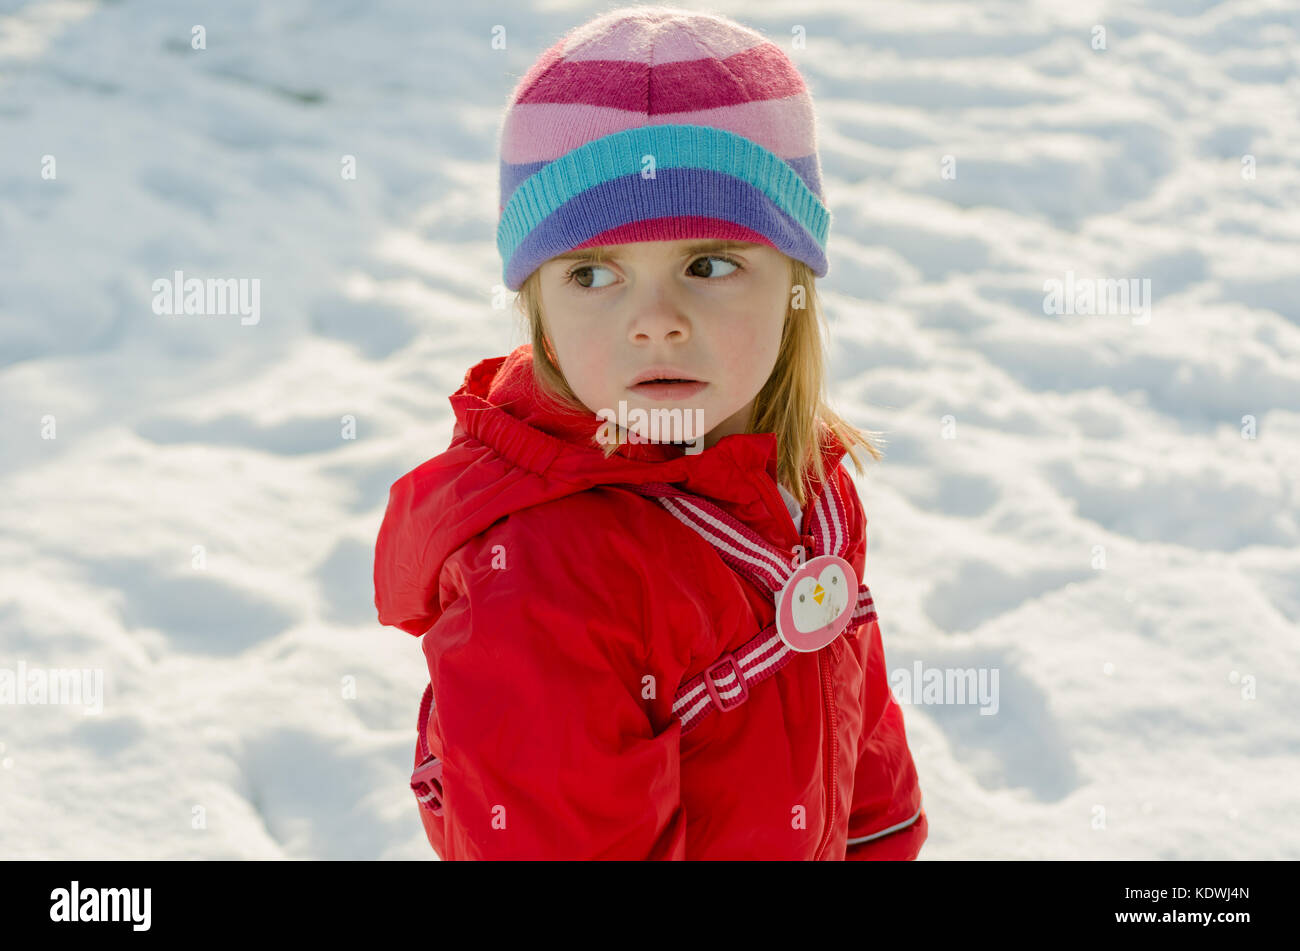 Jolie petite fille d'âge préscolaire en hiver neige scène portant des habits rouges et stripy woolly hat pendant les vacances Banque D'Images